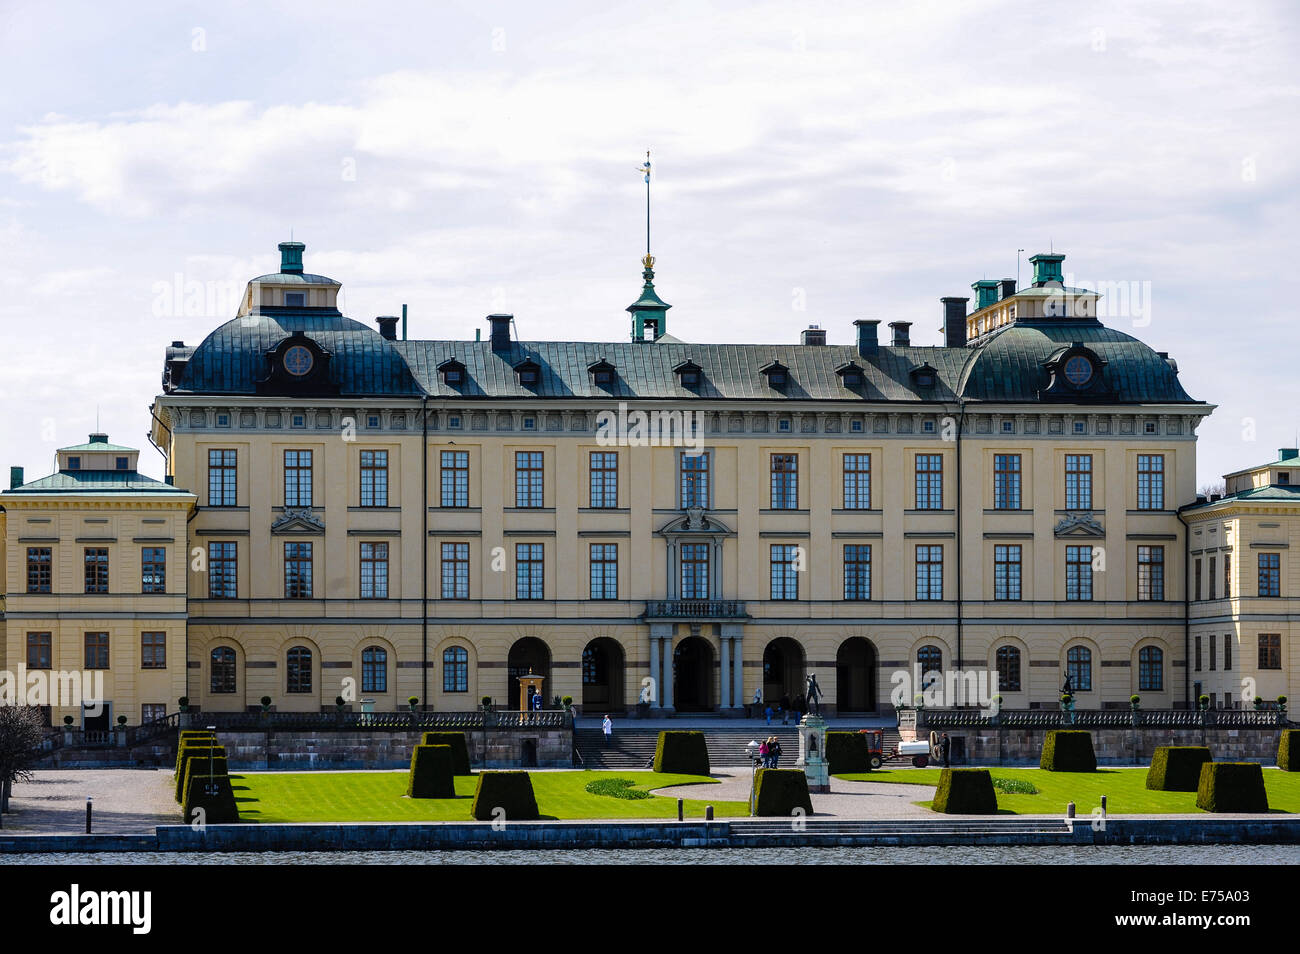 Sweden, Ekerö. The Drottningholm Palace (Drottningholms slott). Stock Photo